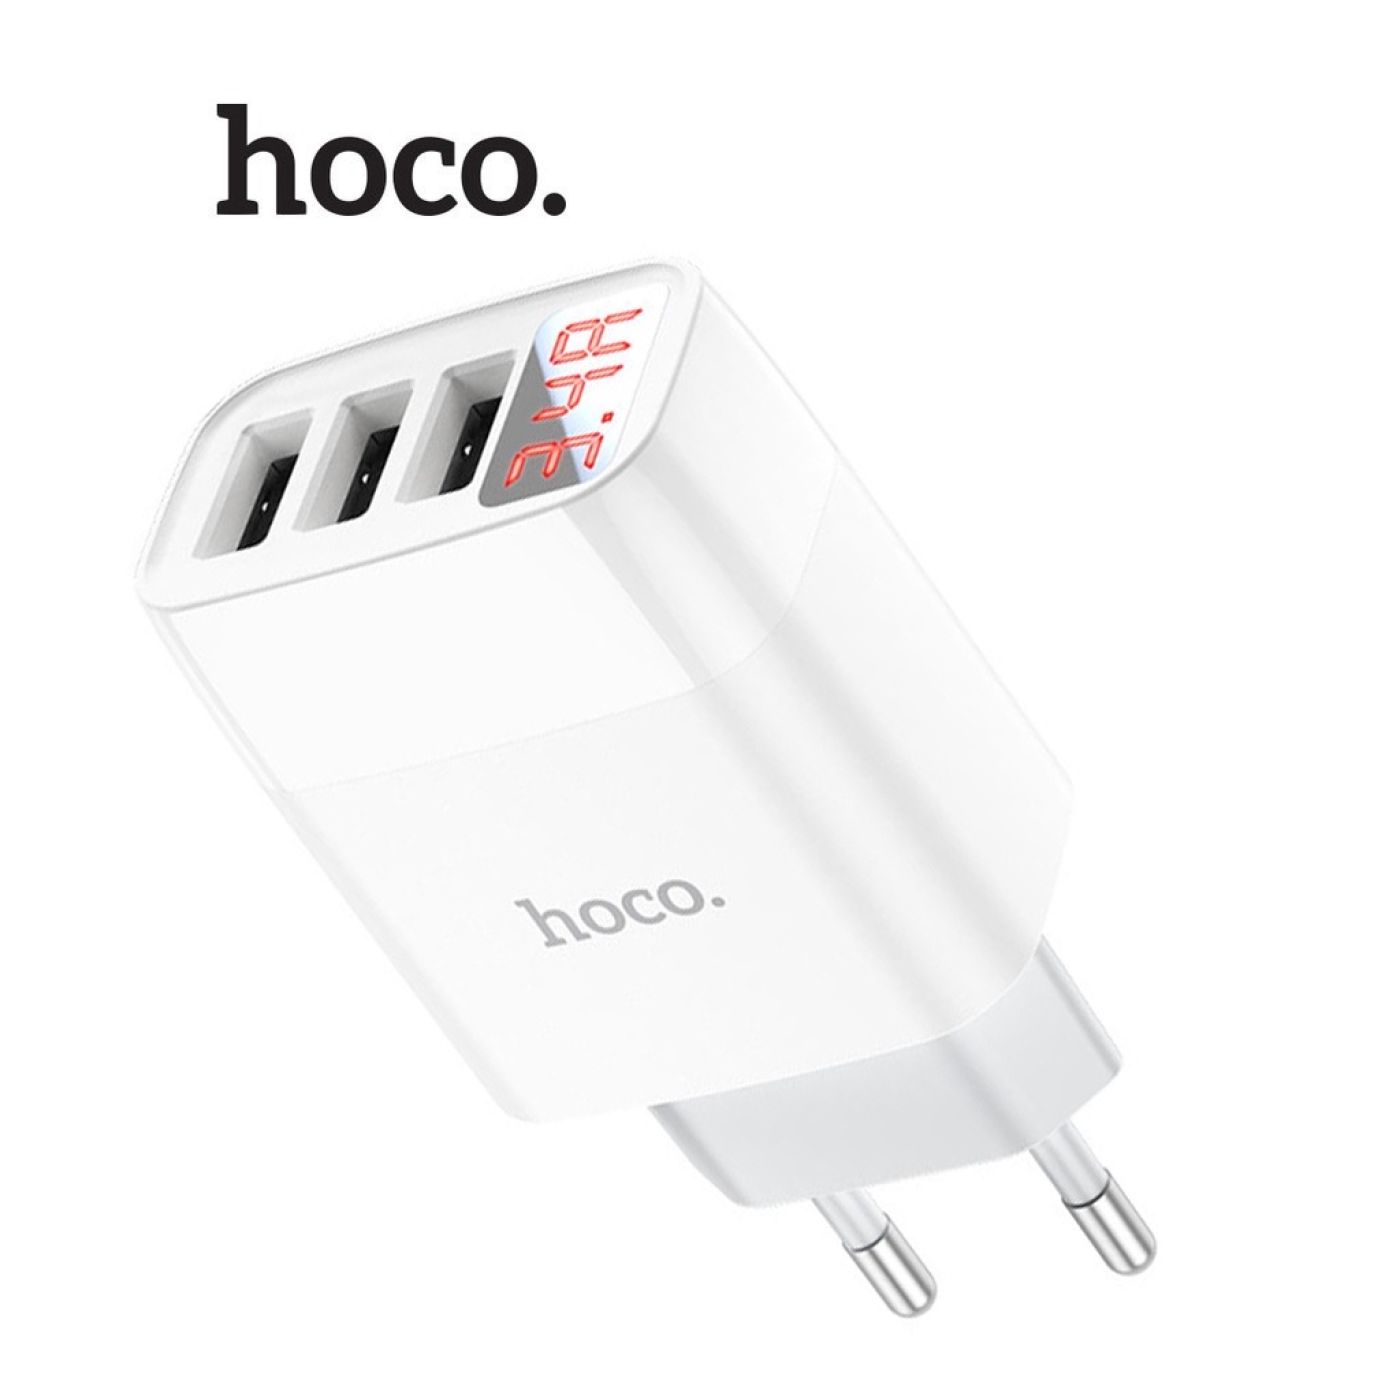 ￼Củ Sạc 3.4A Hoco C93A Chân Tròn 3 Cổng USB, Màn Hình Led Hiển Thị Nguồn Điện